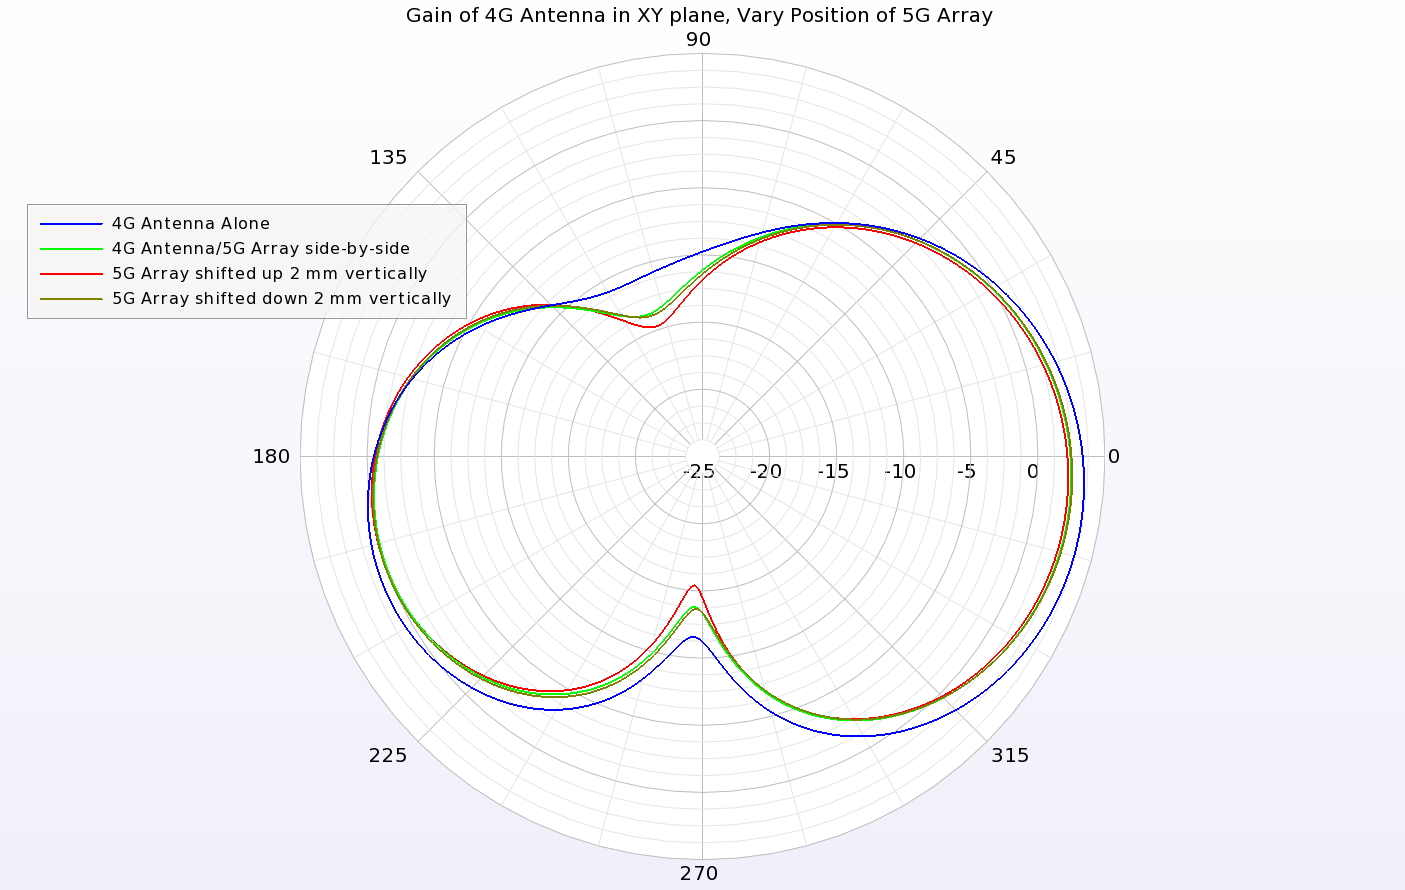 図11：XY平面における4Gアンテナの利得パターンは、5Gアンテナアレイの移動によってわずかに影響を受ける程度である。